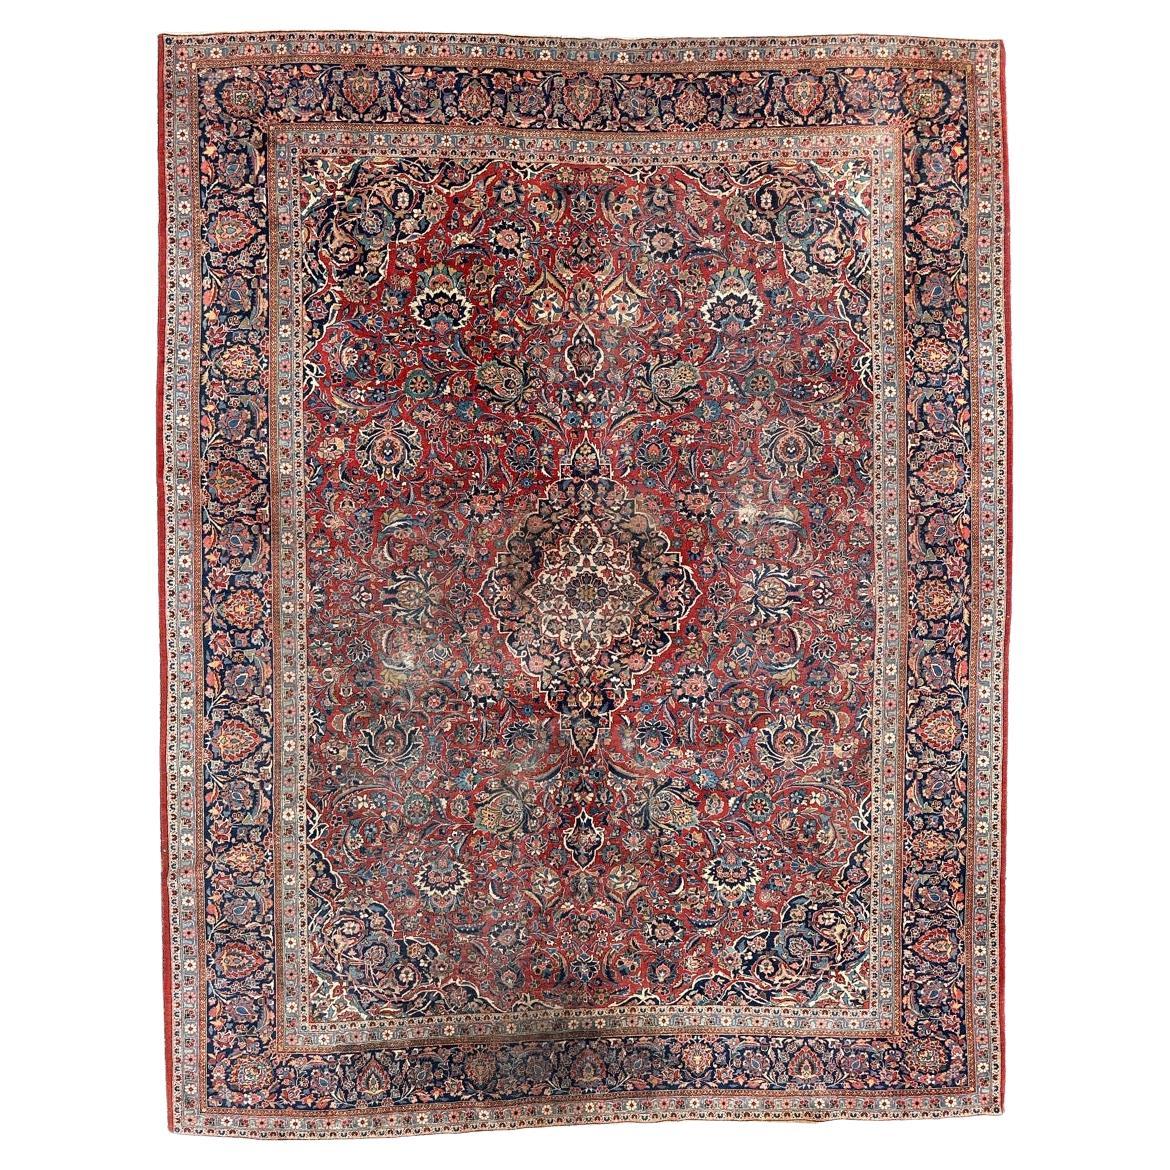 Bobyrug’s Nice antique large kashan rug  For Sale